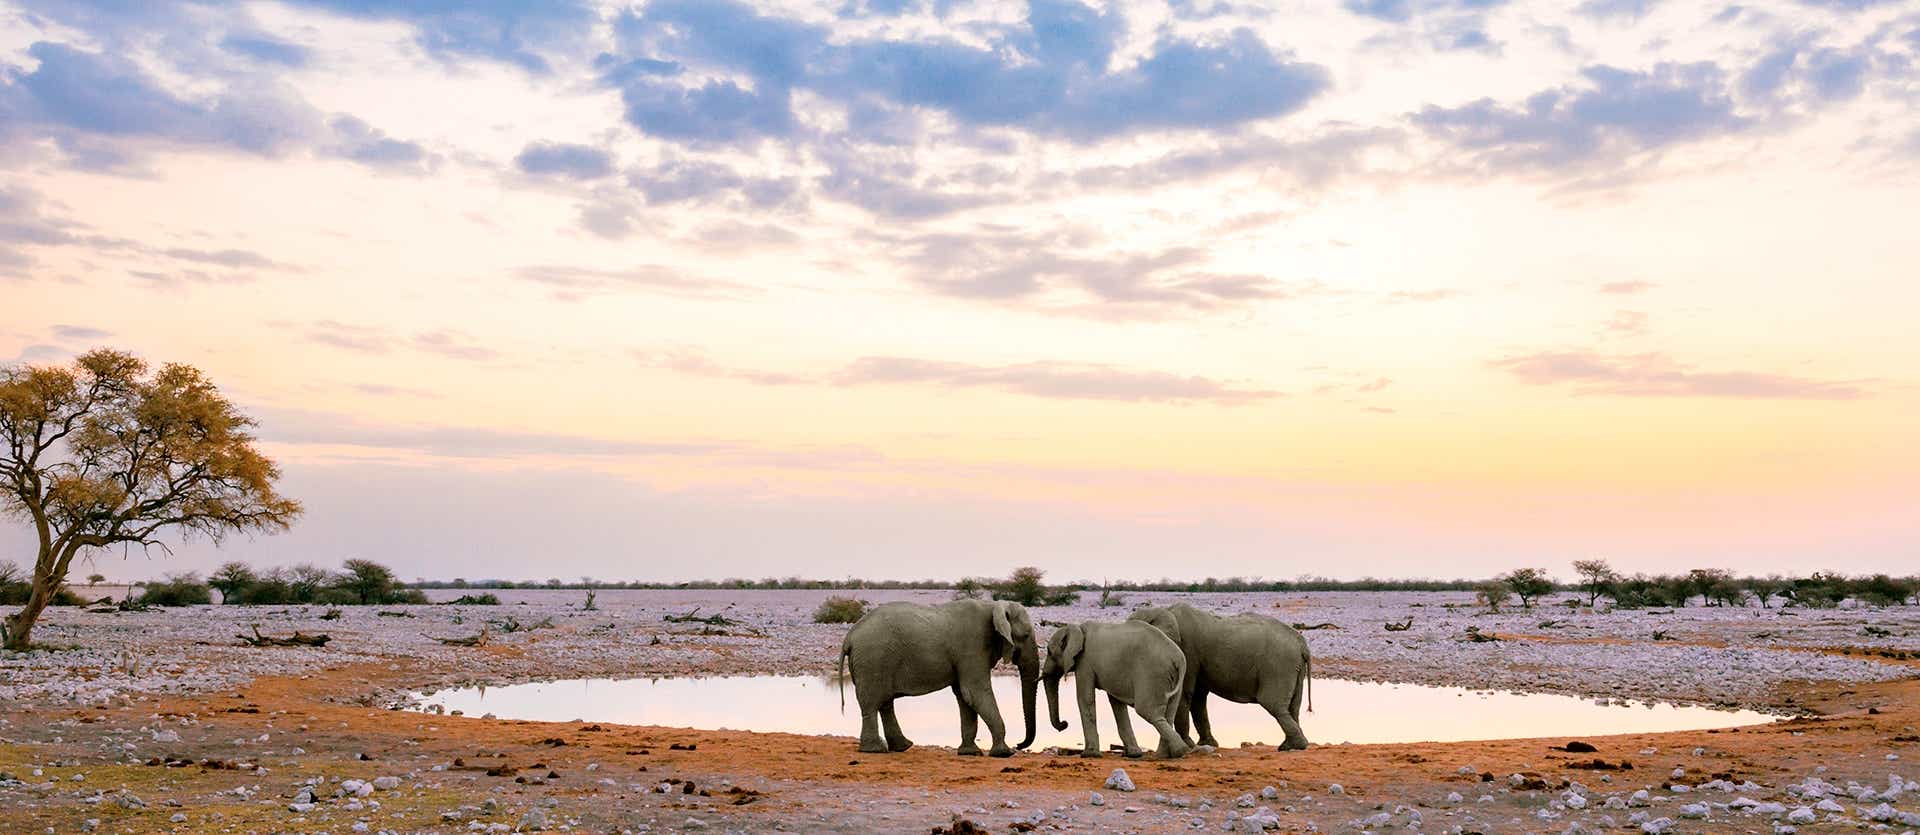 Grupo de elefantes <span class="iconos separador"></span> Parque Nacional Etosha 